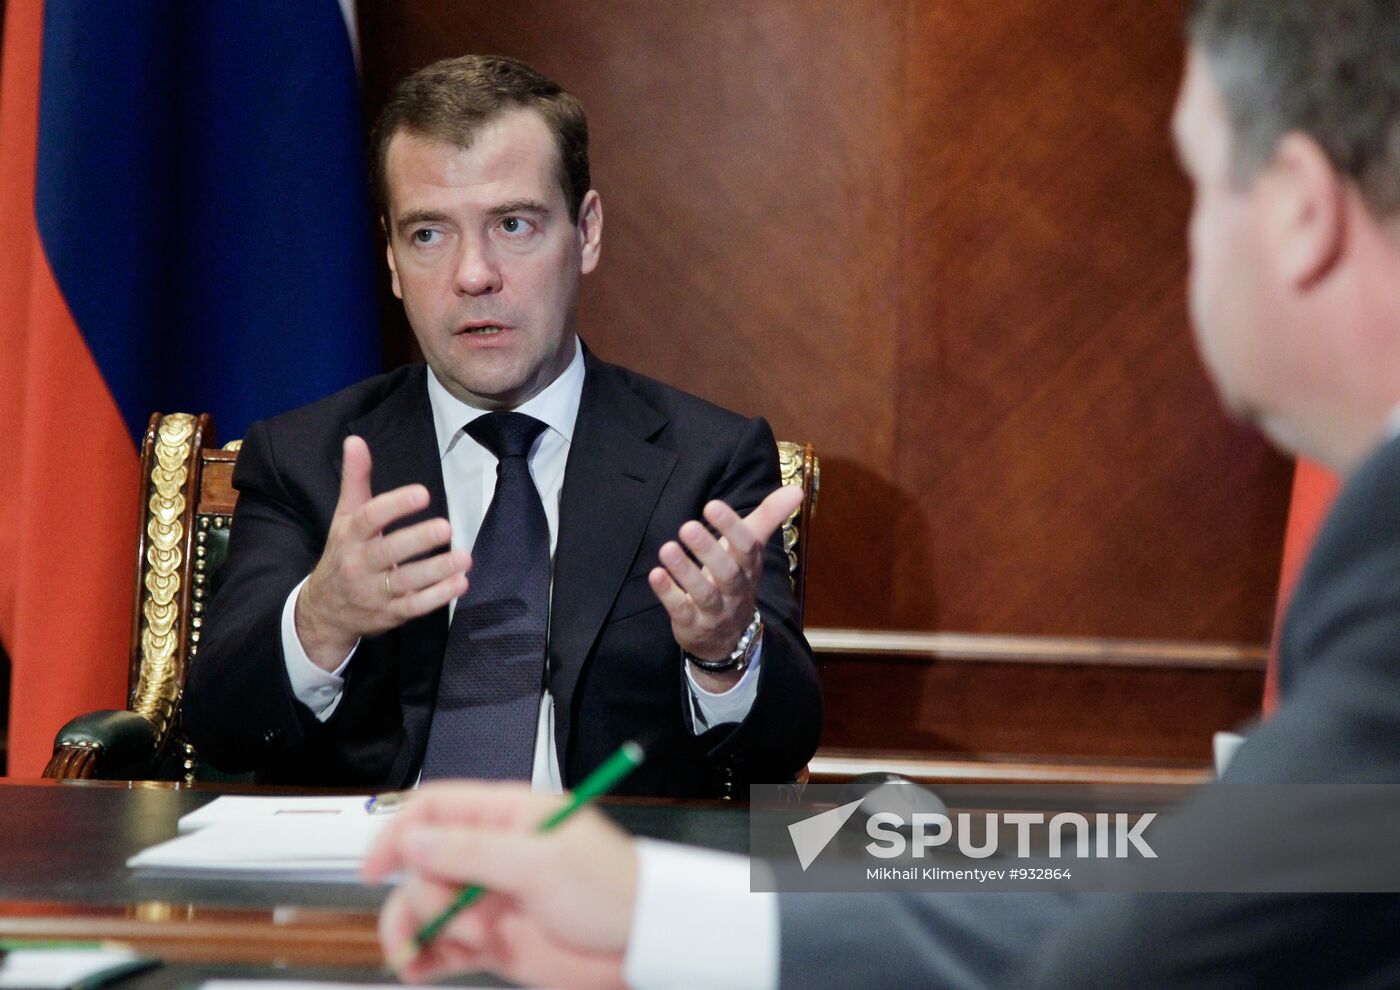 Dmitry Medvedev meets with Sergei Ivanov and Anatoly Serdyukov